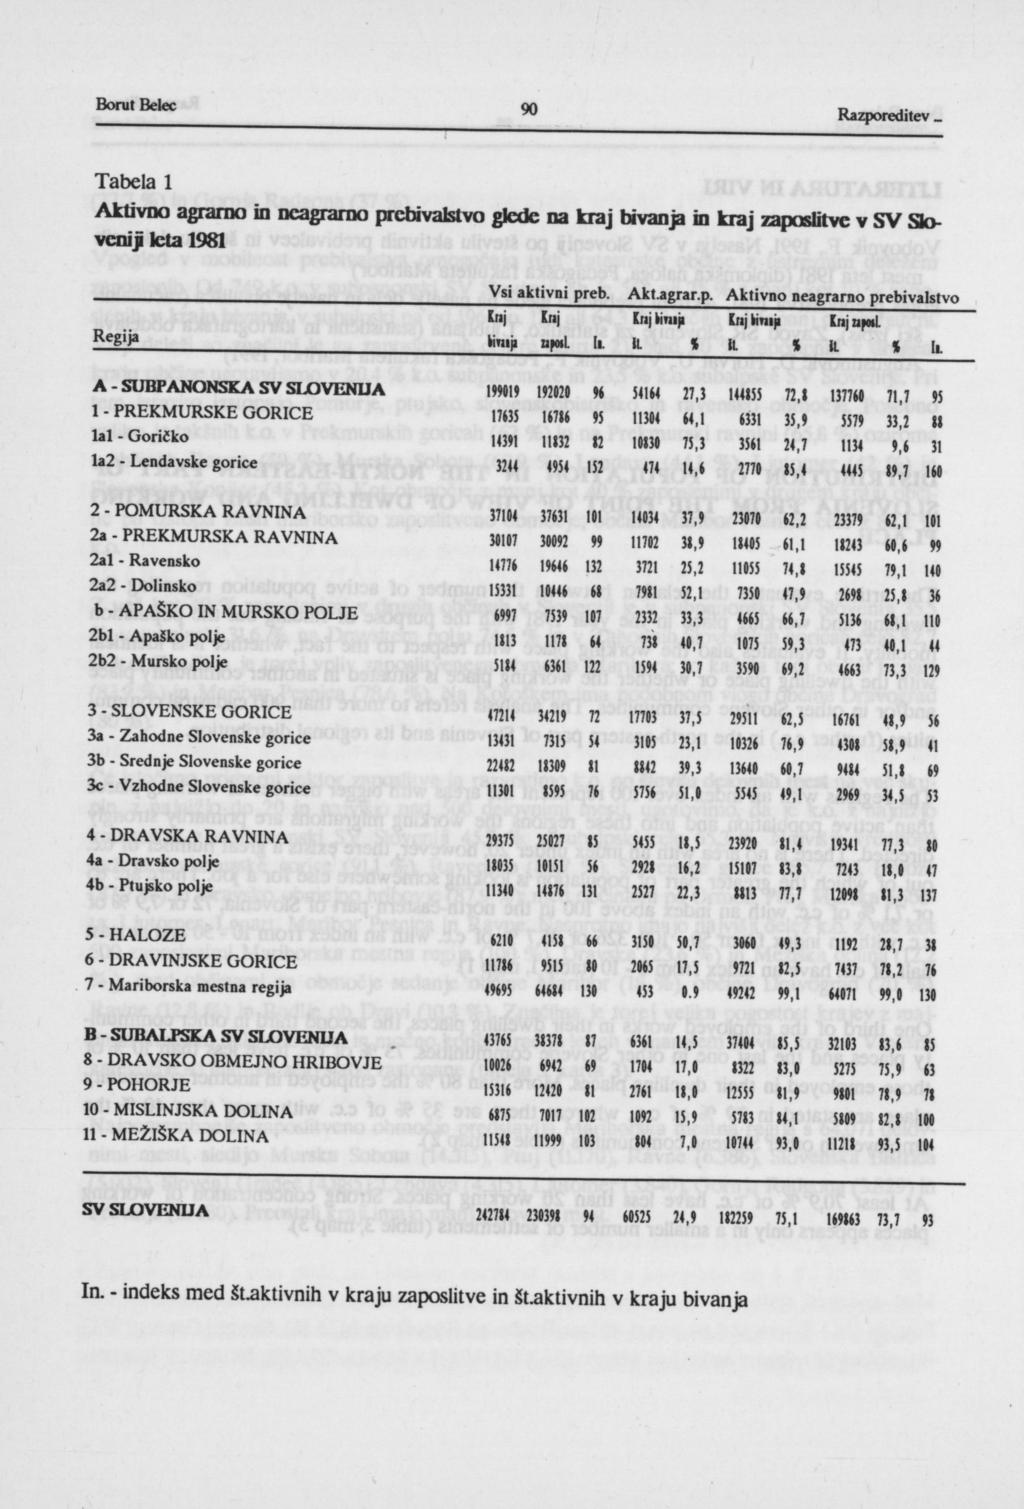 Tabela 1 Aktivno agrarno in neagrarno prebivalstvo glede na kraj bivanja in kraj zaposlitve v SV Sloveniji leta 1981 Vsi aktivni preb. Aklagrar.p. Aktivno neagrarno prebivalstvo "i l"i InjOimji [njkmiji [njnpml J Oimji apoil [i.